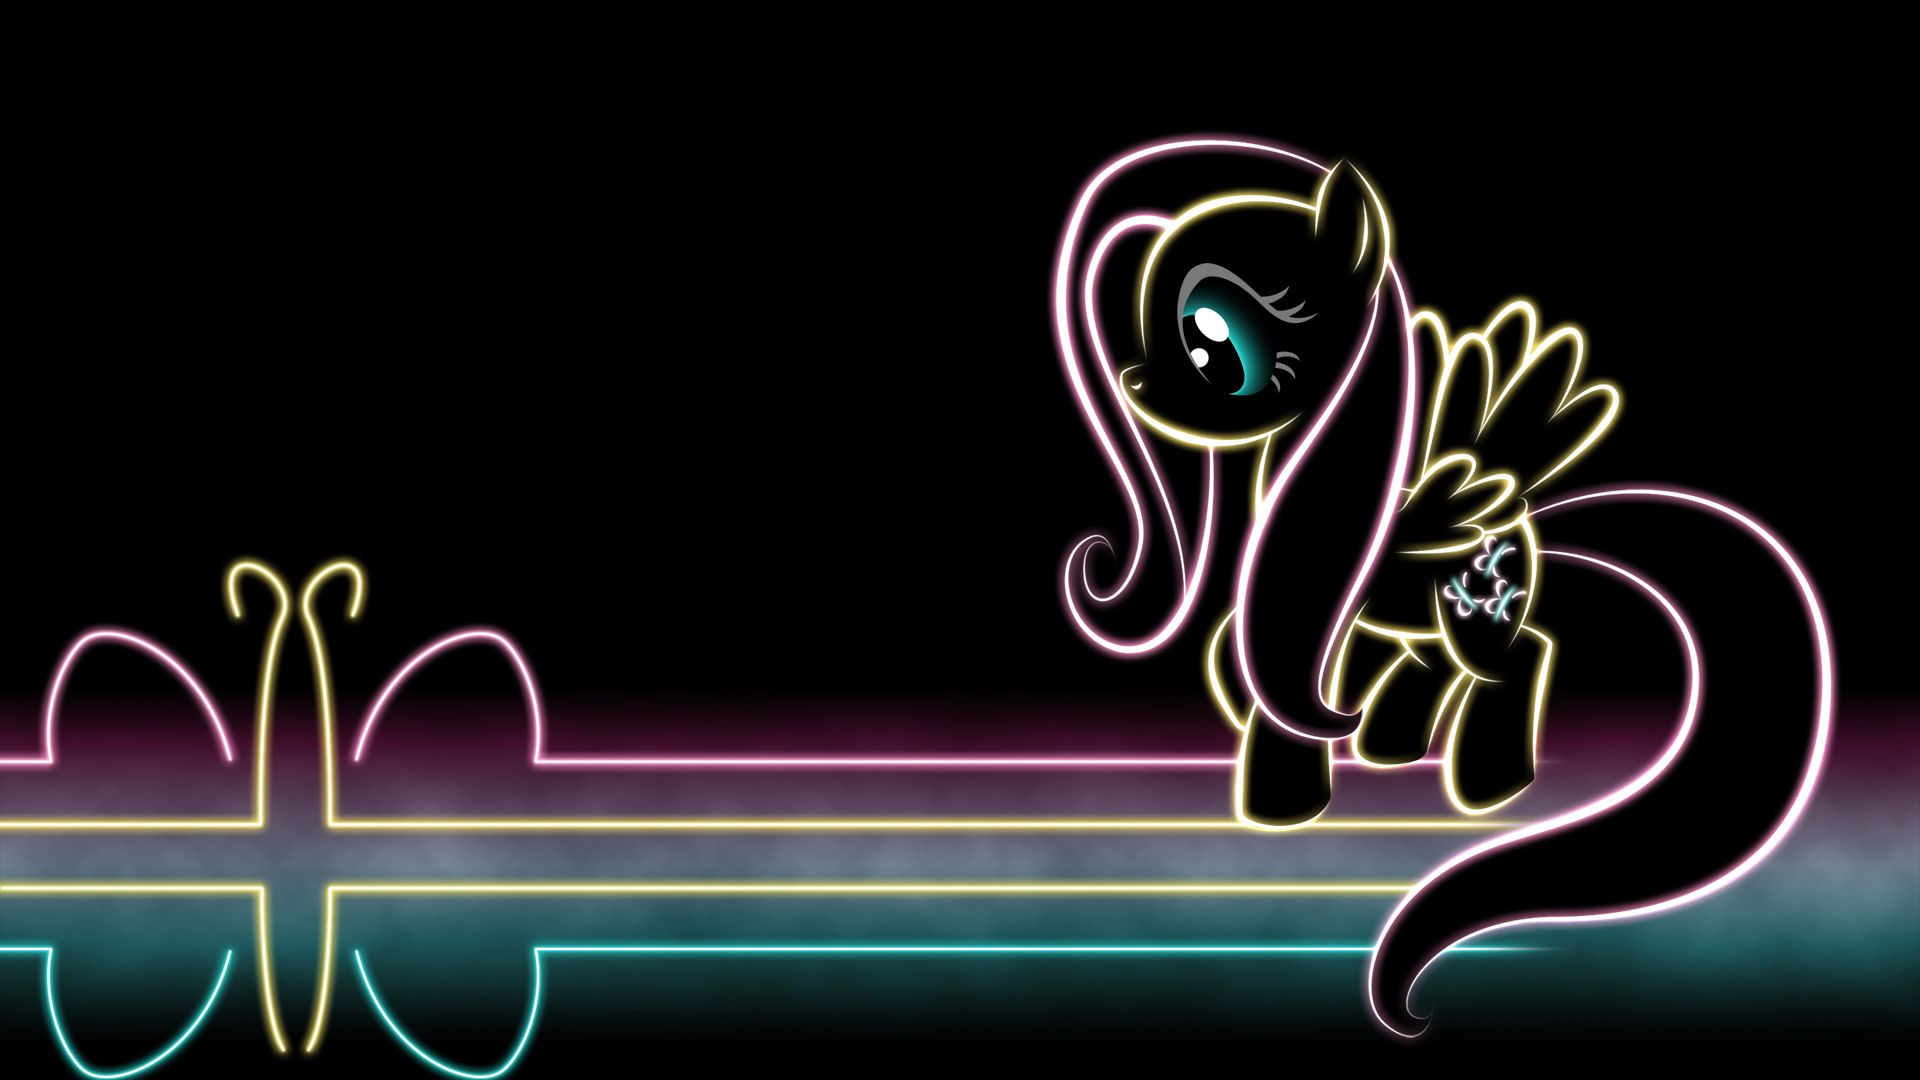 1920x1080 My Little Pony Friendship is Magic Wallpaper: MLP Glow Wallpapers | My little pony wallpaper, My little pony, Pony